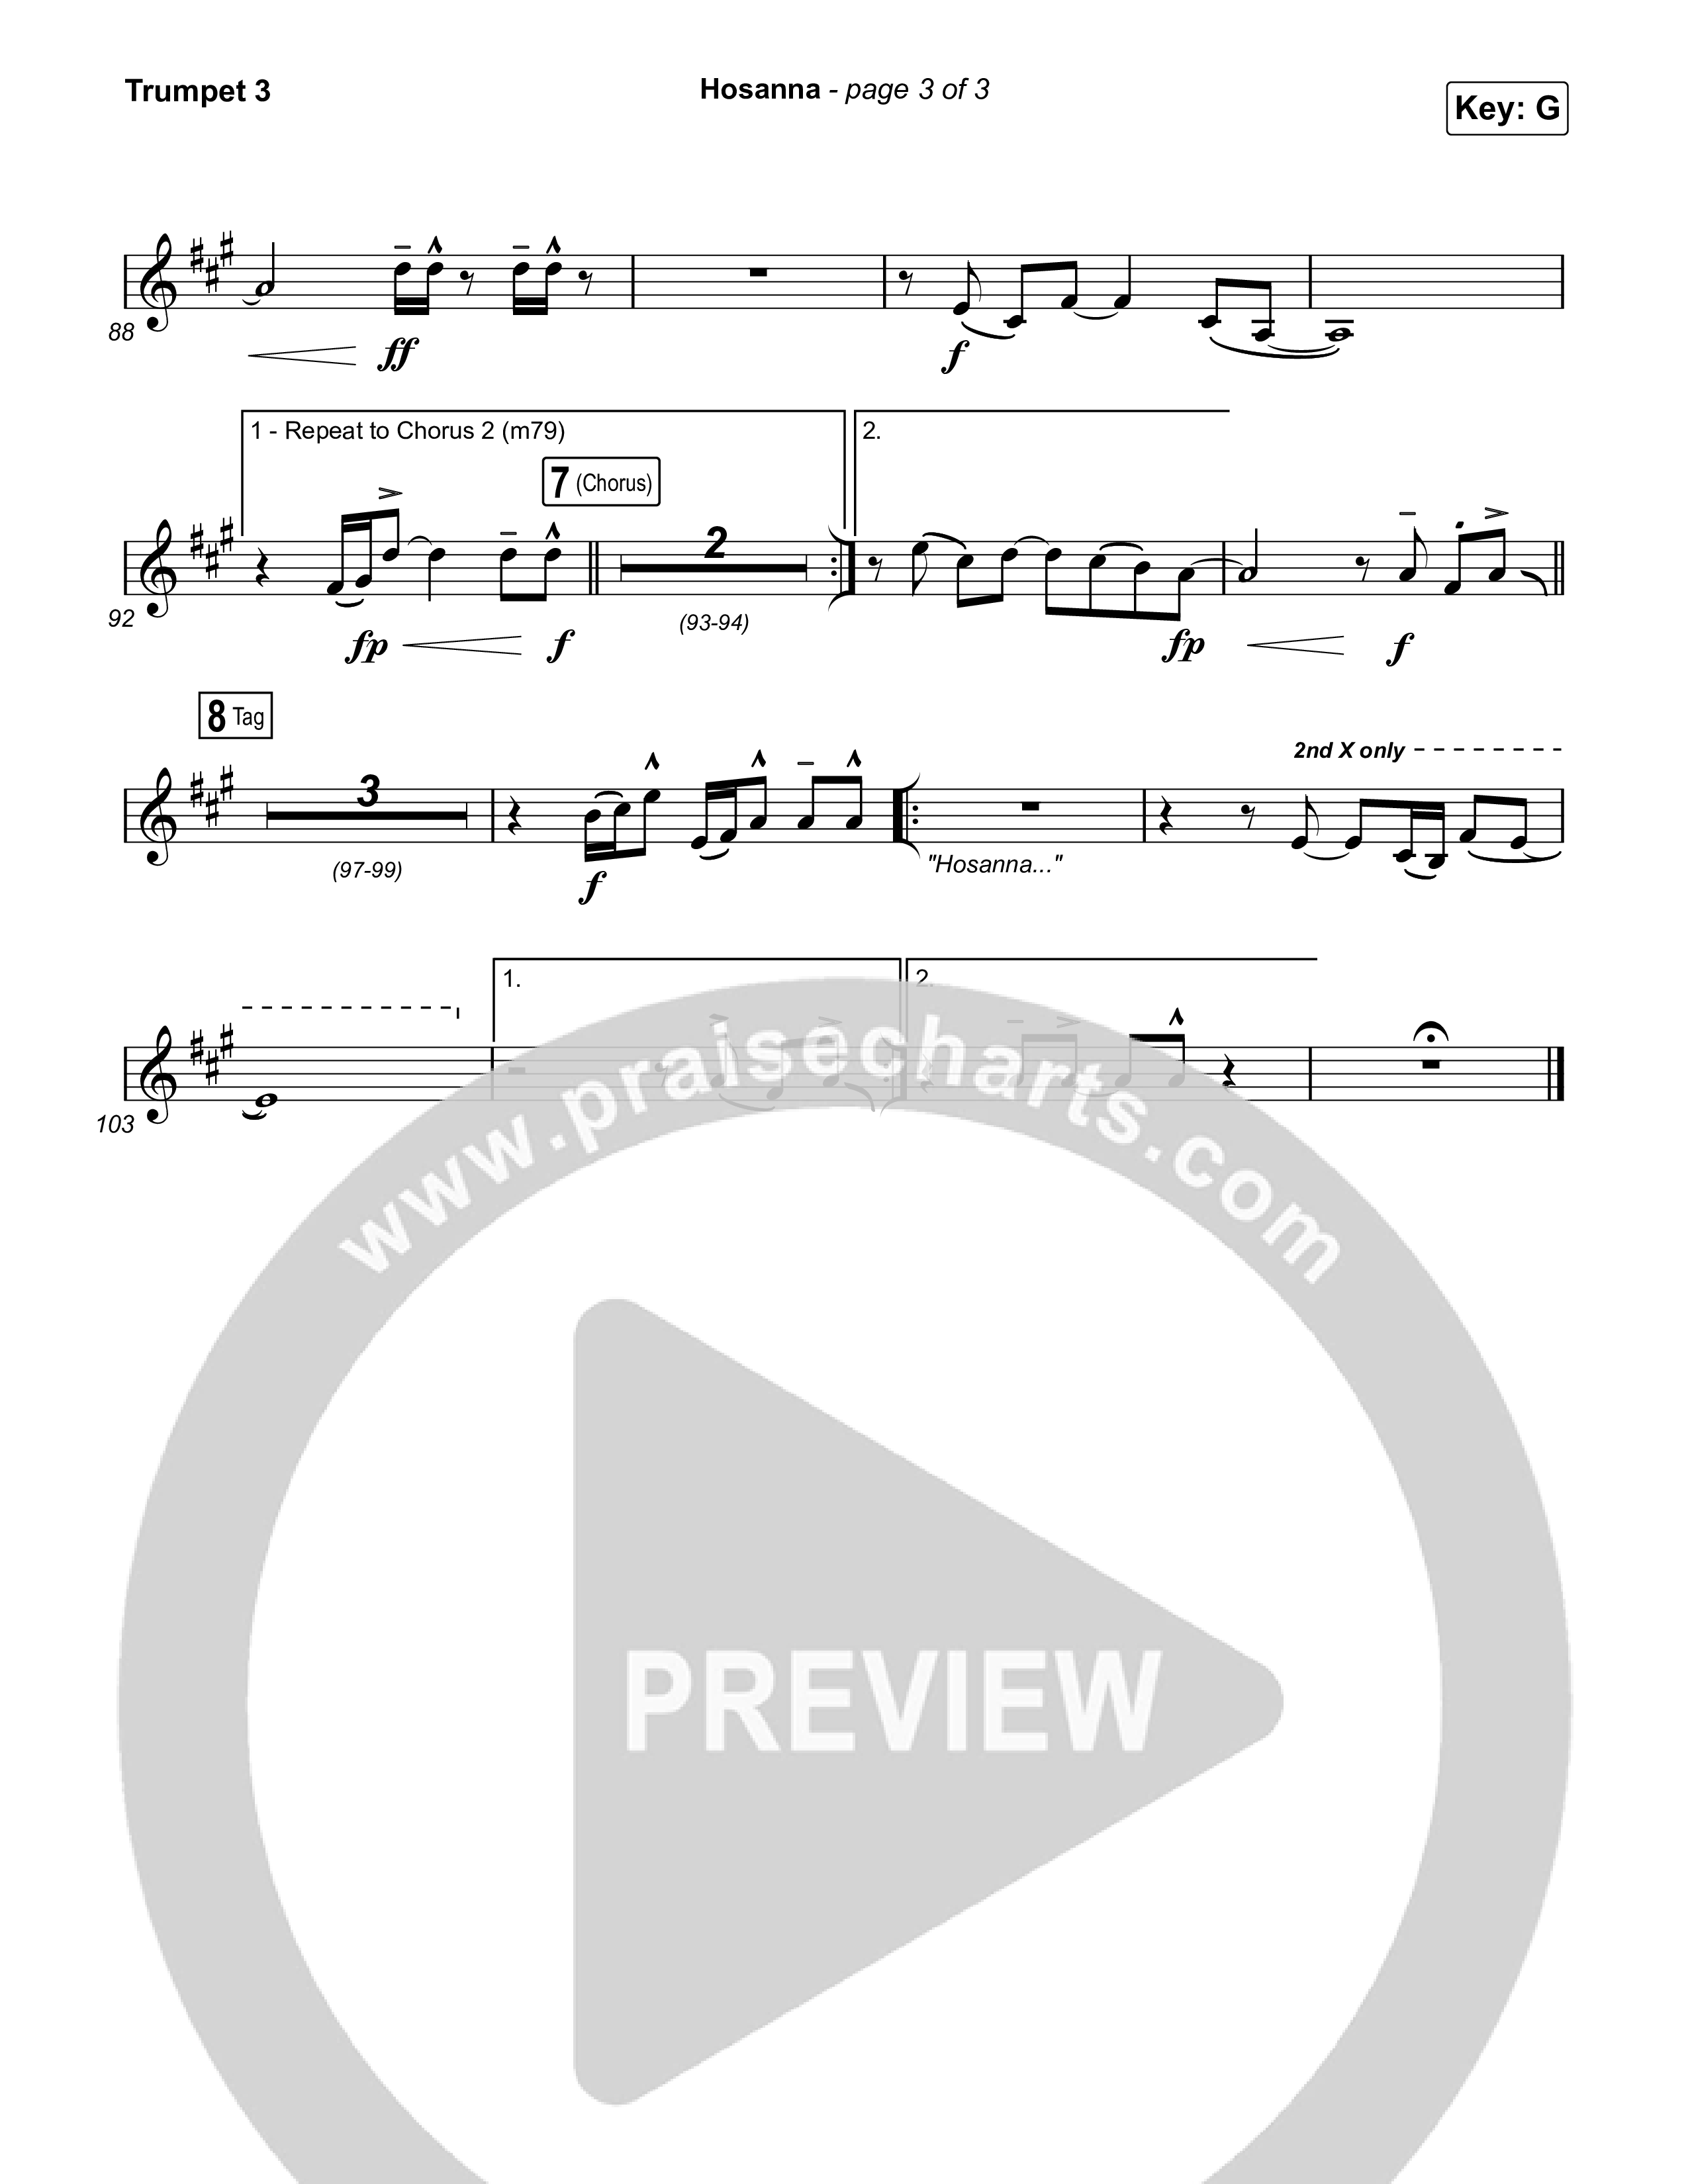 Hosanna (Praise Is Rising) Trumpet 3 (Paul Baloche)